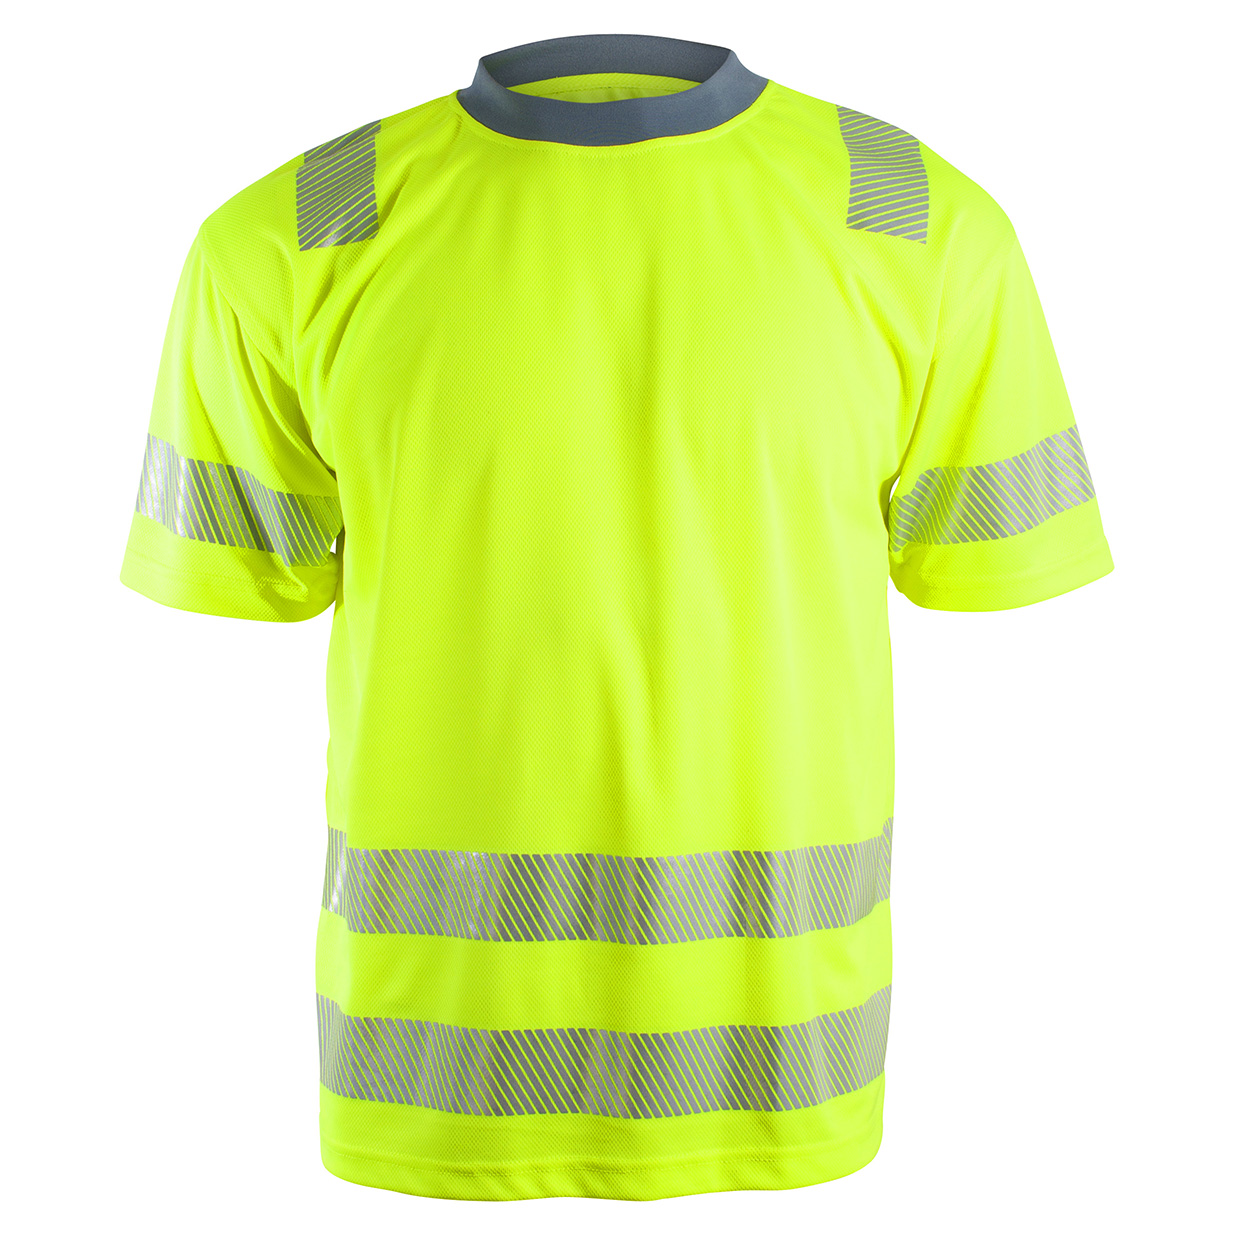 Sundsvall Unisex T-shirt med reflekser, gul